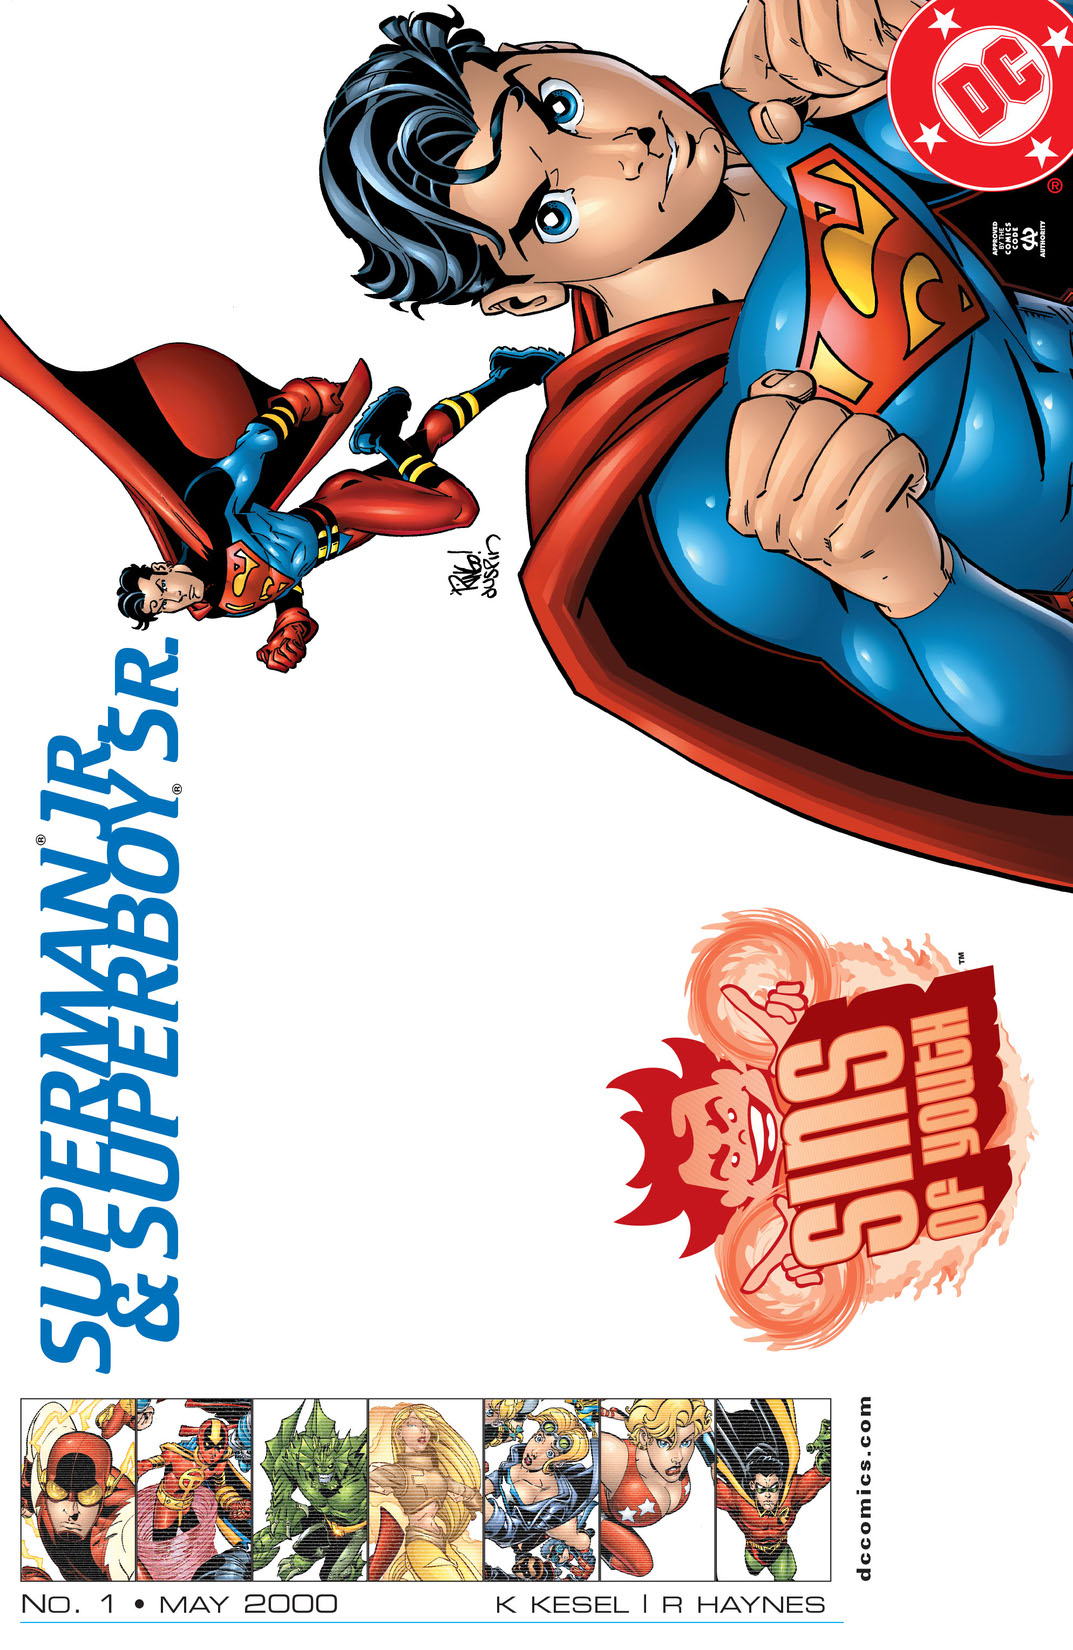 Sins of Youth: Superboy, Sr./Superman, Jr. #1 preview images